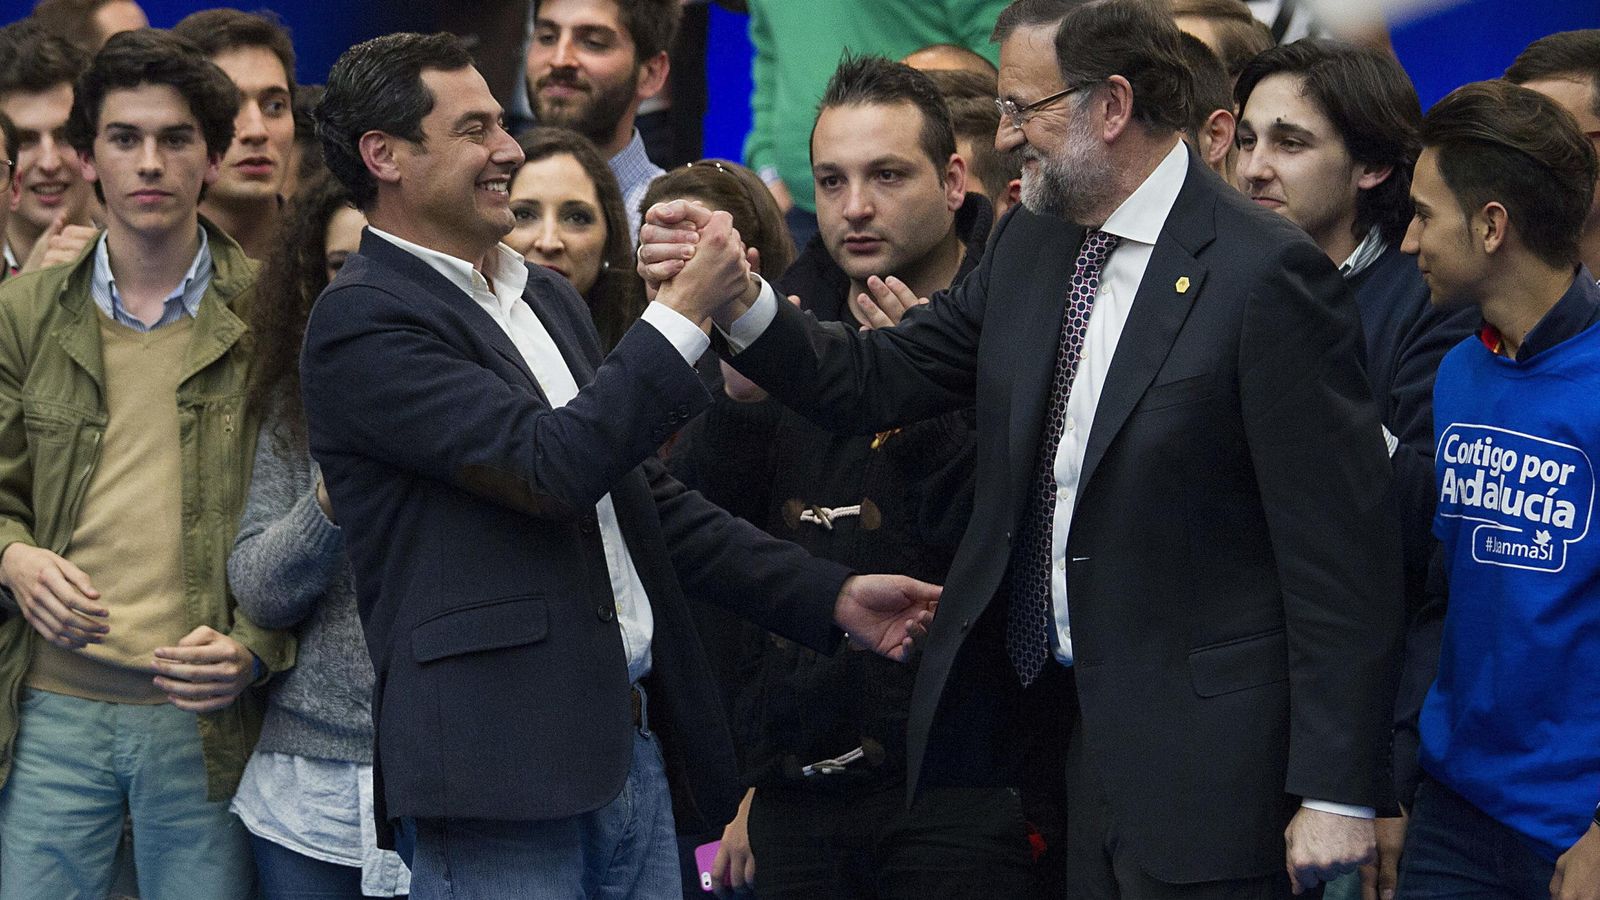 Foto: Saludo entre Moreno Bonilla y Rajoy en el mitin de clausura de campaña. (EFE)